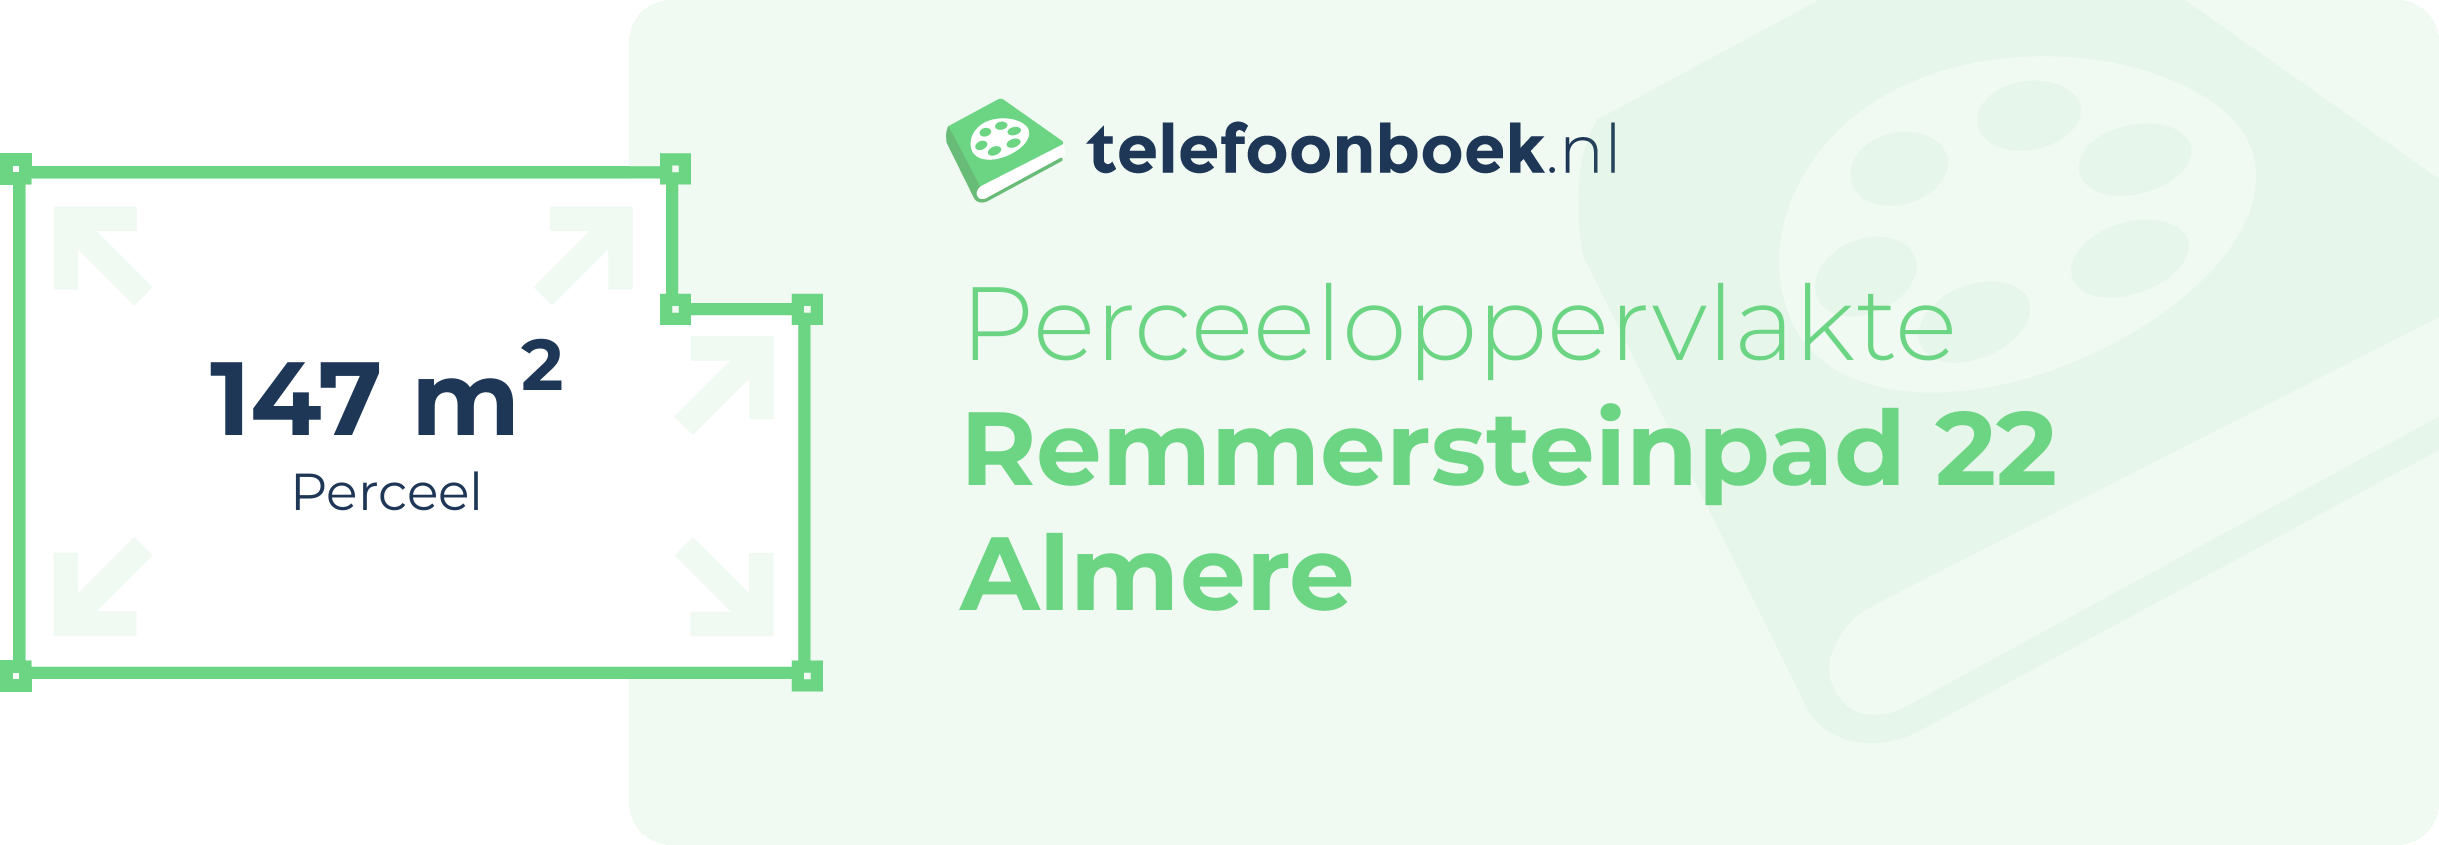 Perceeloppervlakte Remmersteinpad 22 Almere